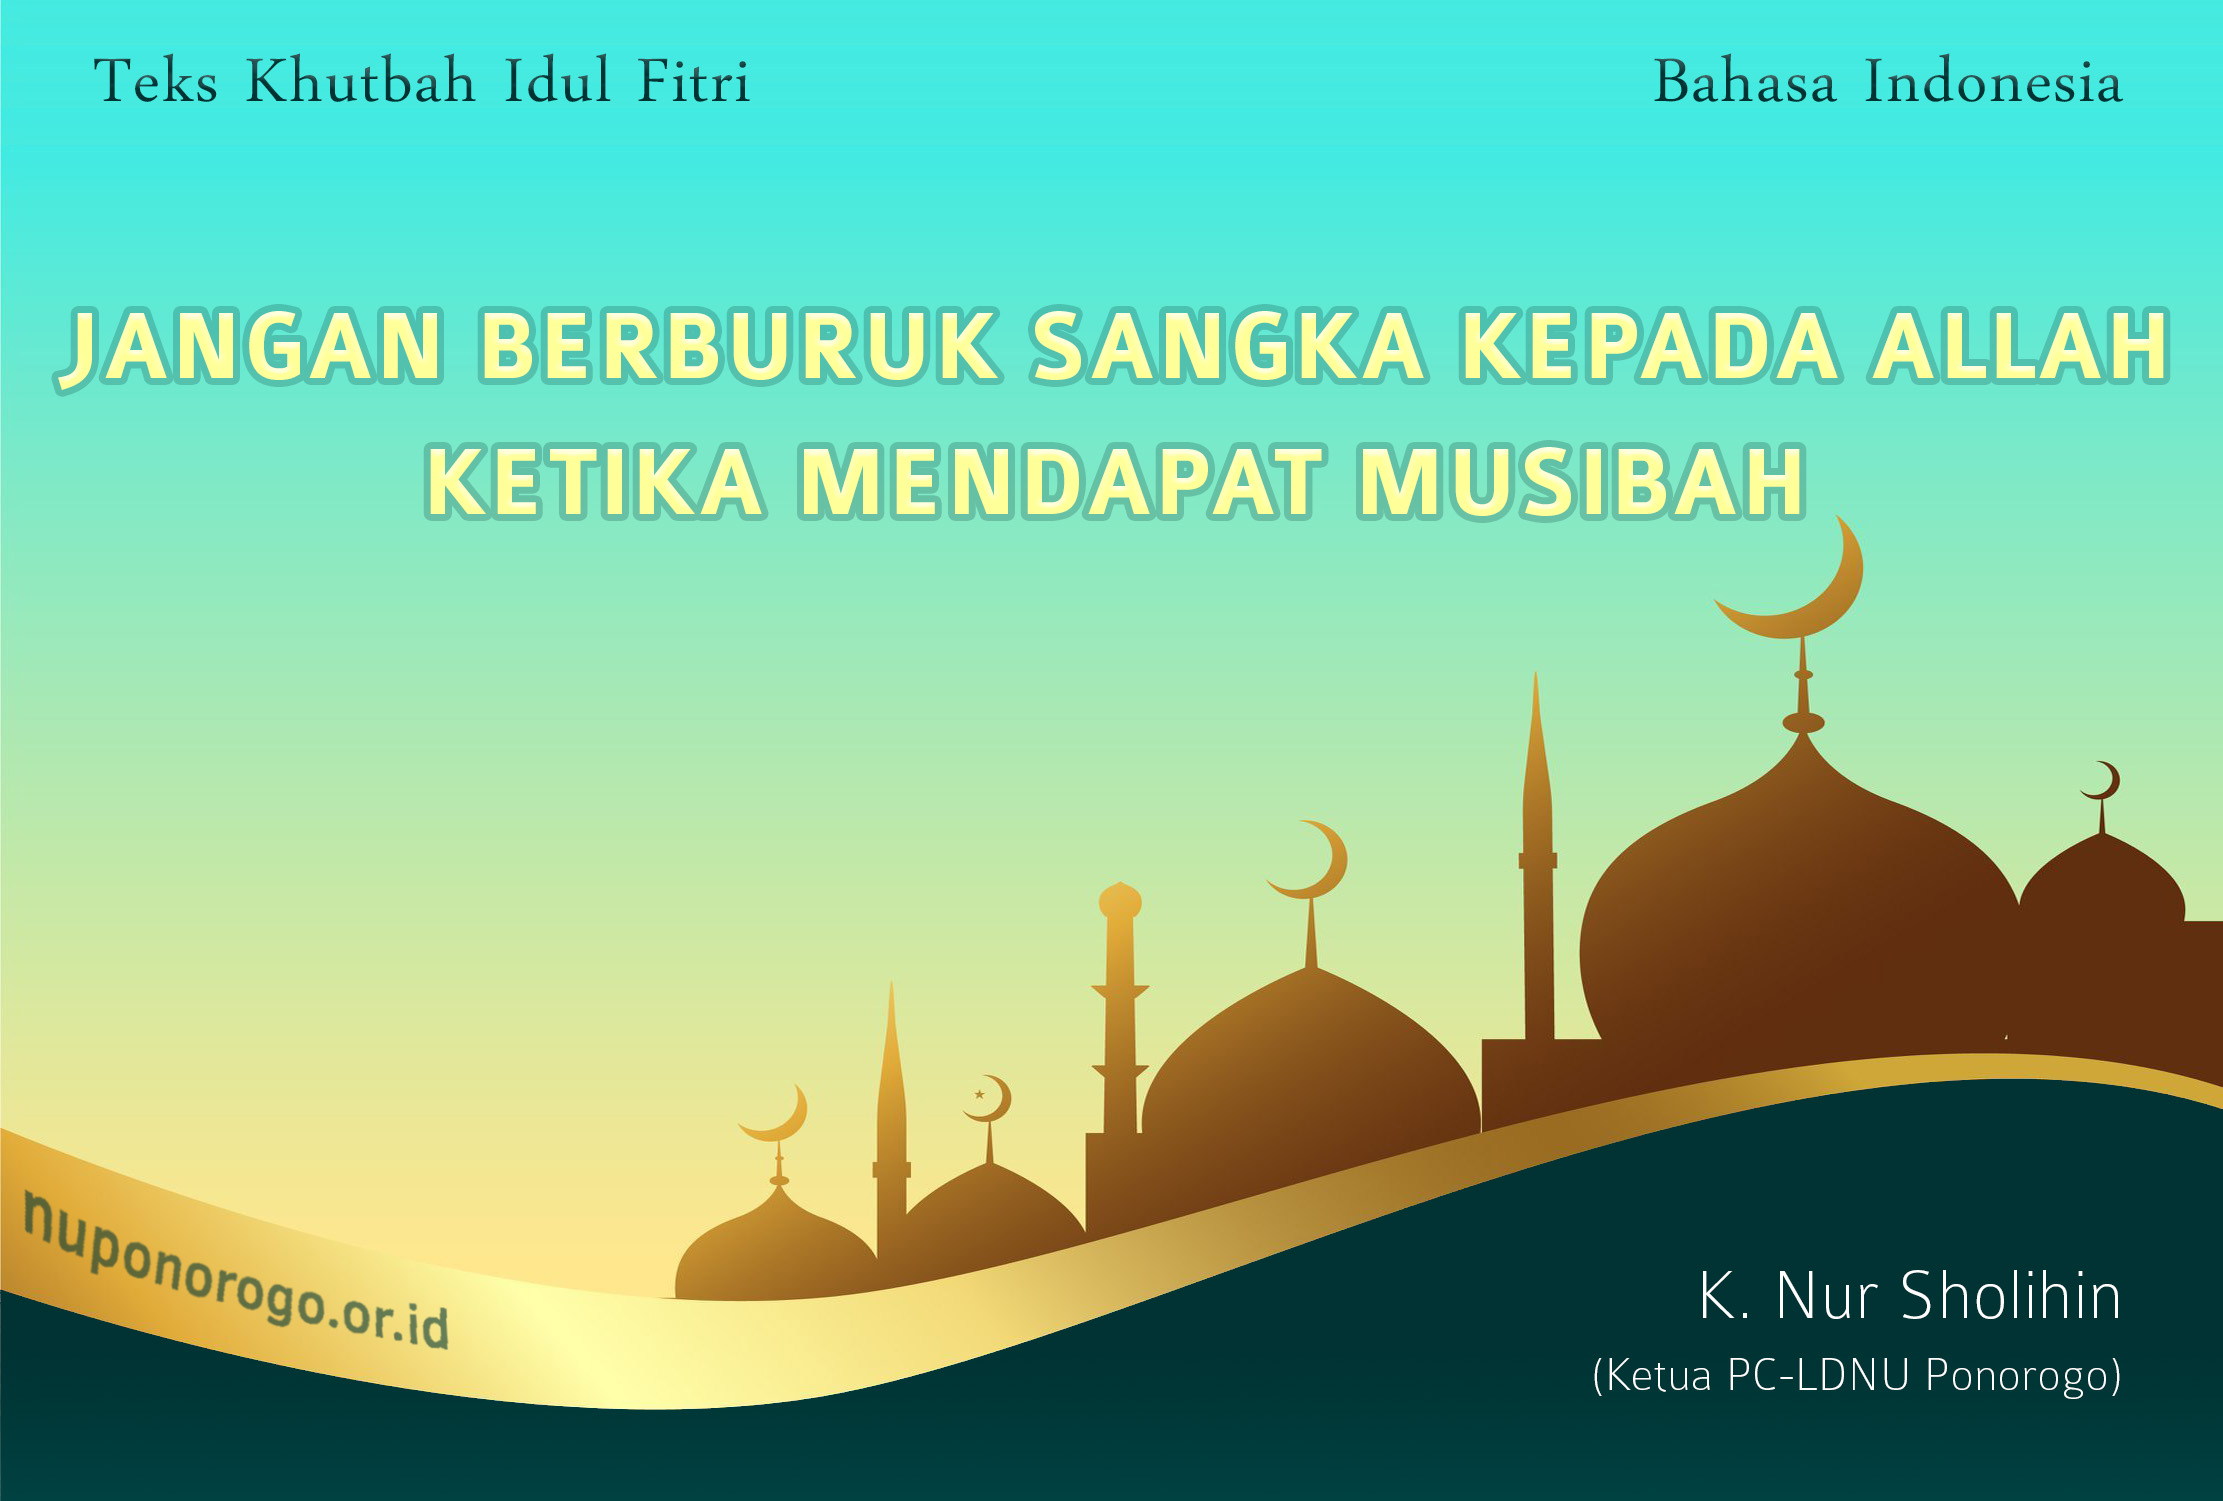 Khutbah Idul Fitri 2021 - JANGAN BERBURUK SANGKA KEPADA ALLAH KETIKA MENDAPAT MUSIBAH